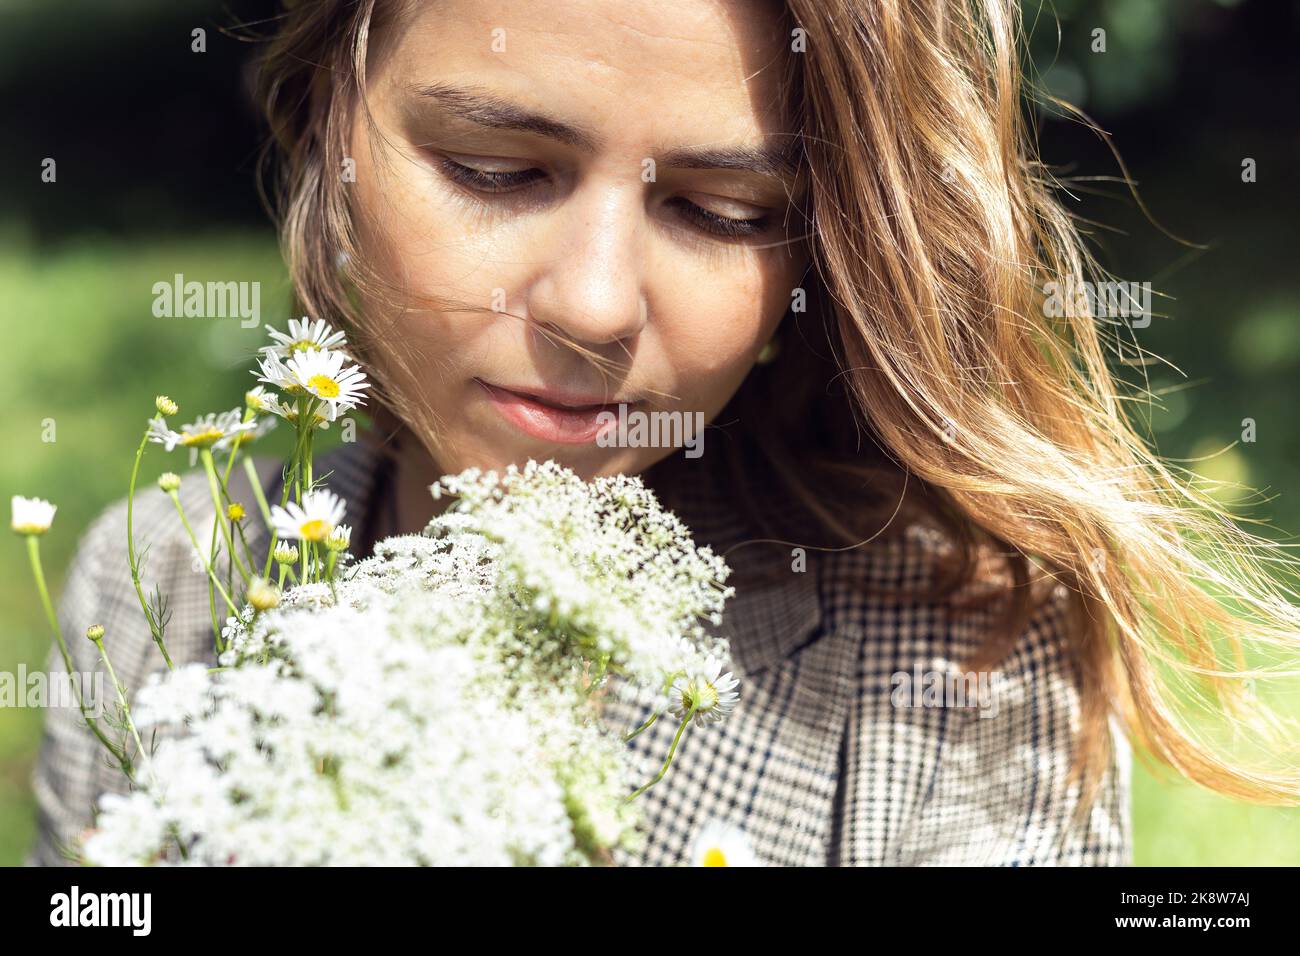 Nahaufnahme blonde, ruhige blonde Frau, die einen Strauß von Feldblumen hält und ihn riecht. Aromatherapie oder Allergie. Naturpark Stockfoto